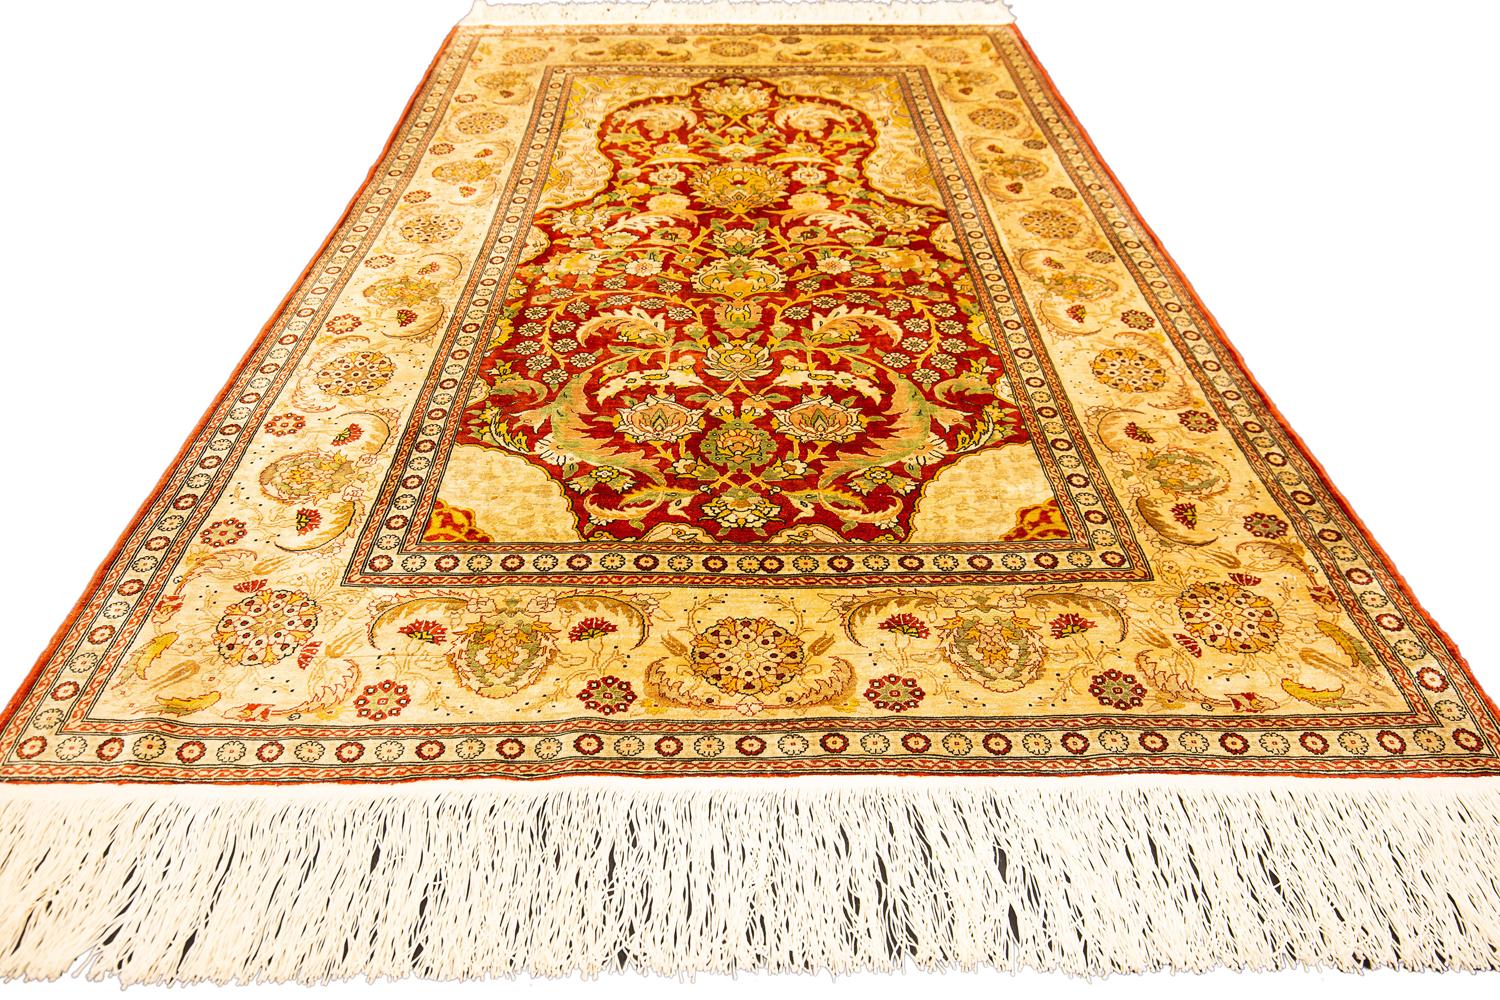 Es handelt sich um einen extrem feinen türkischen Herekeh-Teppich aus Seide und Metallfäden, gewebt in den 1950er bis 1970er Jahren und misst 156 - 100 cm in der Größe. In der linken oberen Ecke dieses Stücks befindet sich die ikonische